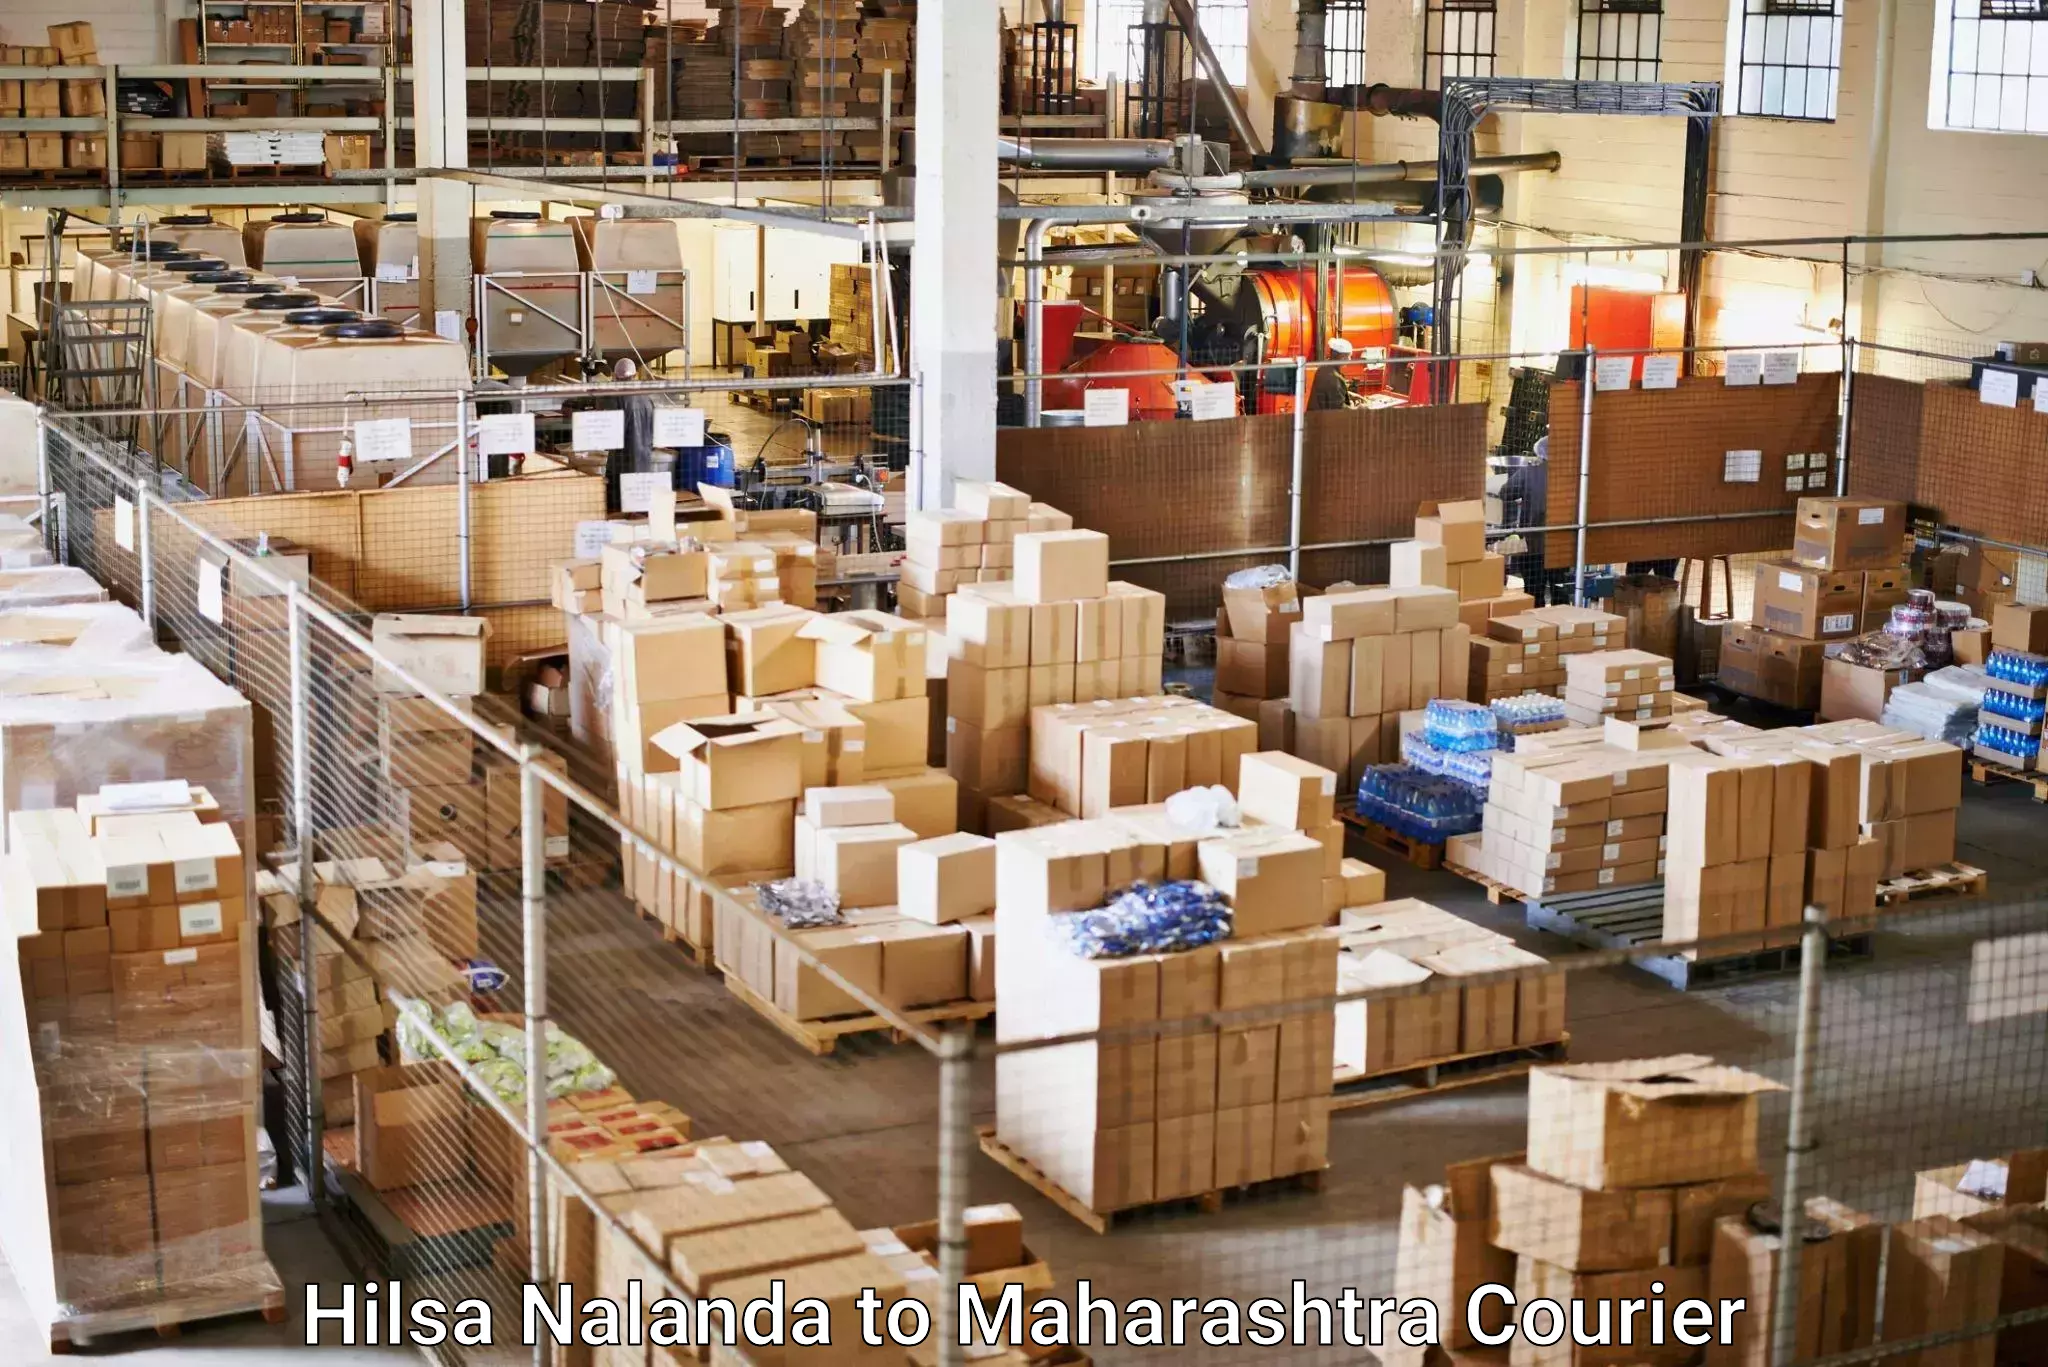 24/7 shipping services Hilsa Nalanda to Maharashtra